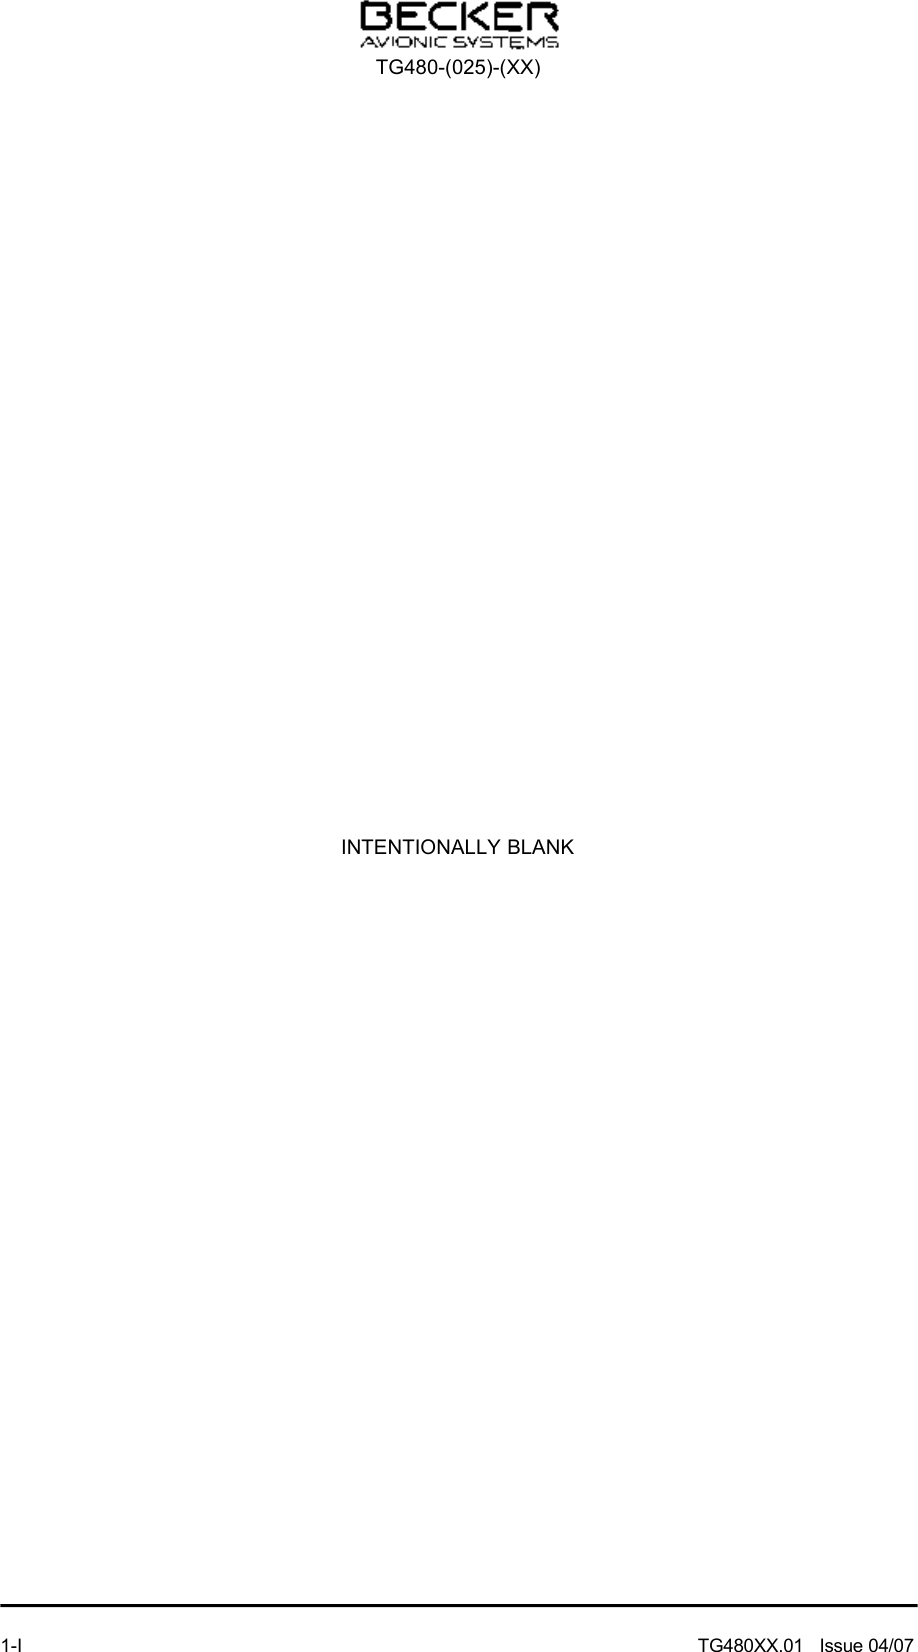 INTENTIONALLY BLANKTG480-(025)-(XX)1-I  TG480XX.01   Issue 04/07